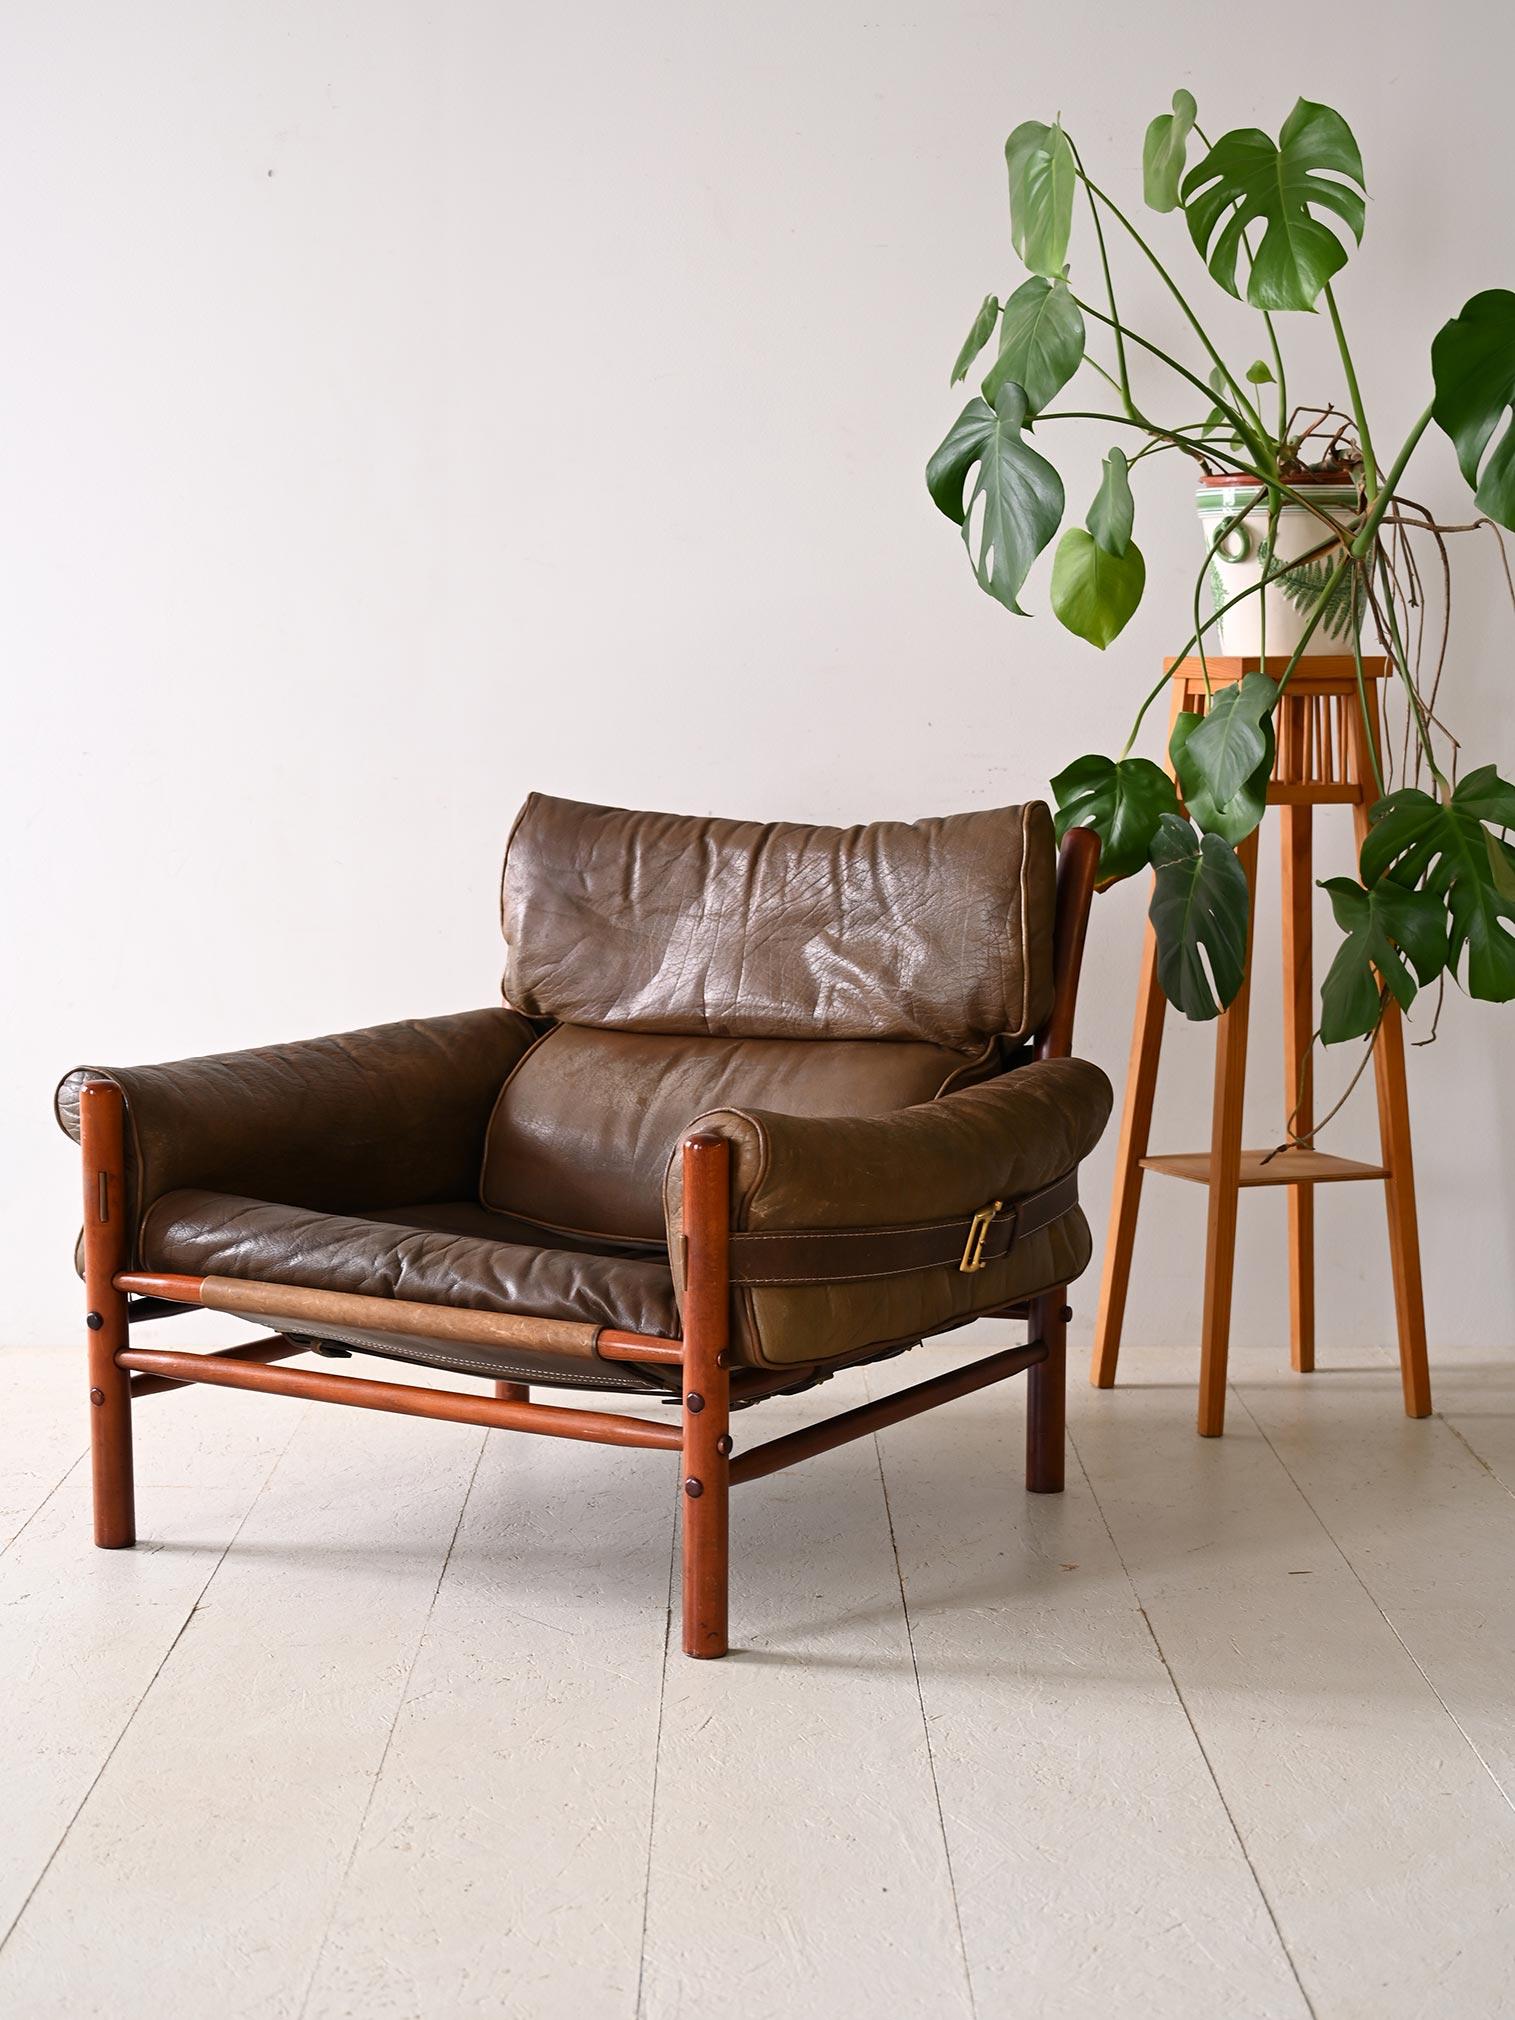 Fauteuil scandinave avec assise en cuir. Ce chef-d'œuvre de design allie la beauté chaleureuse du bois et le raffinement du cuir pour créer une pièce qui se distingue par son style distinctif et sa qualité de fabrication. Le cadre en bois constitue